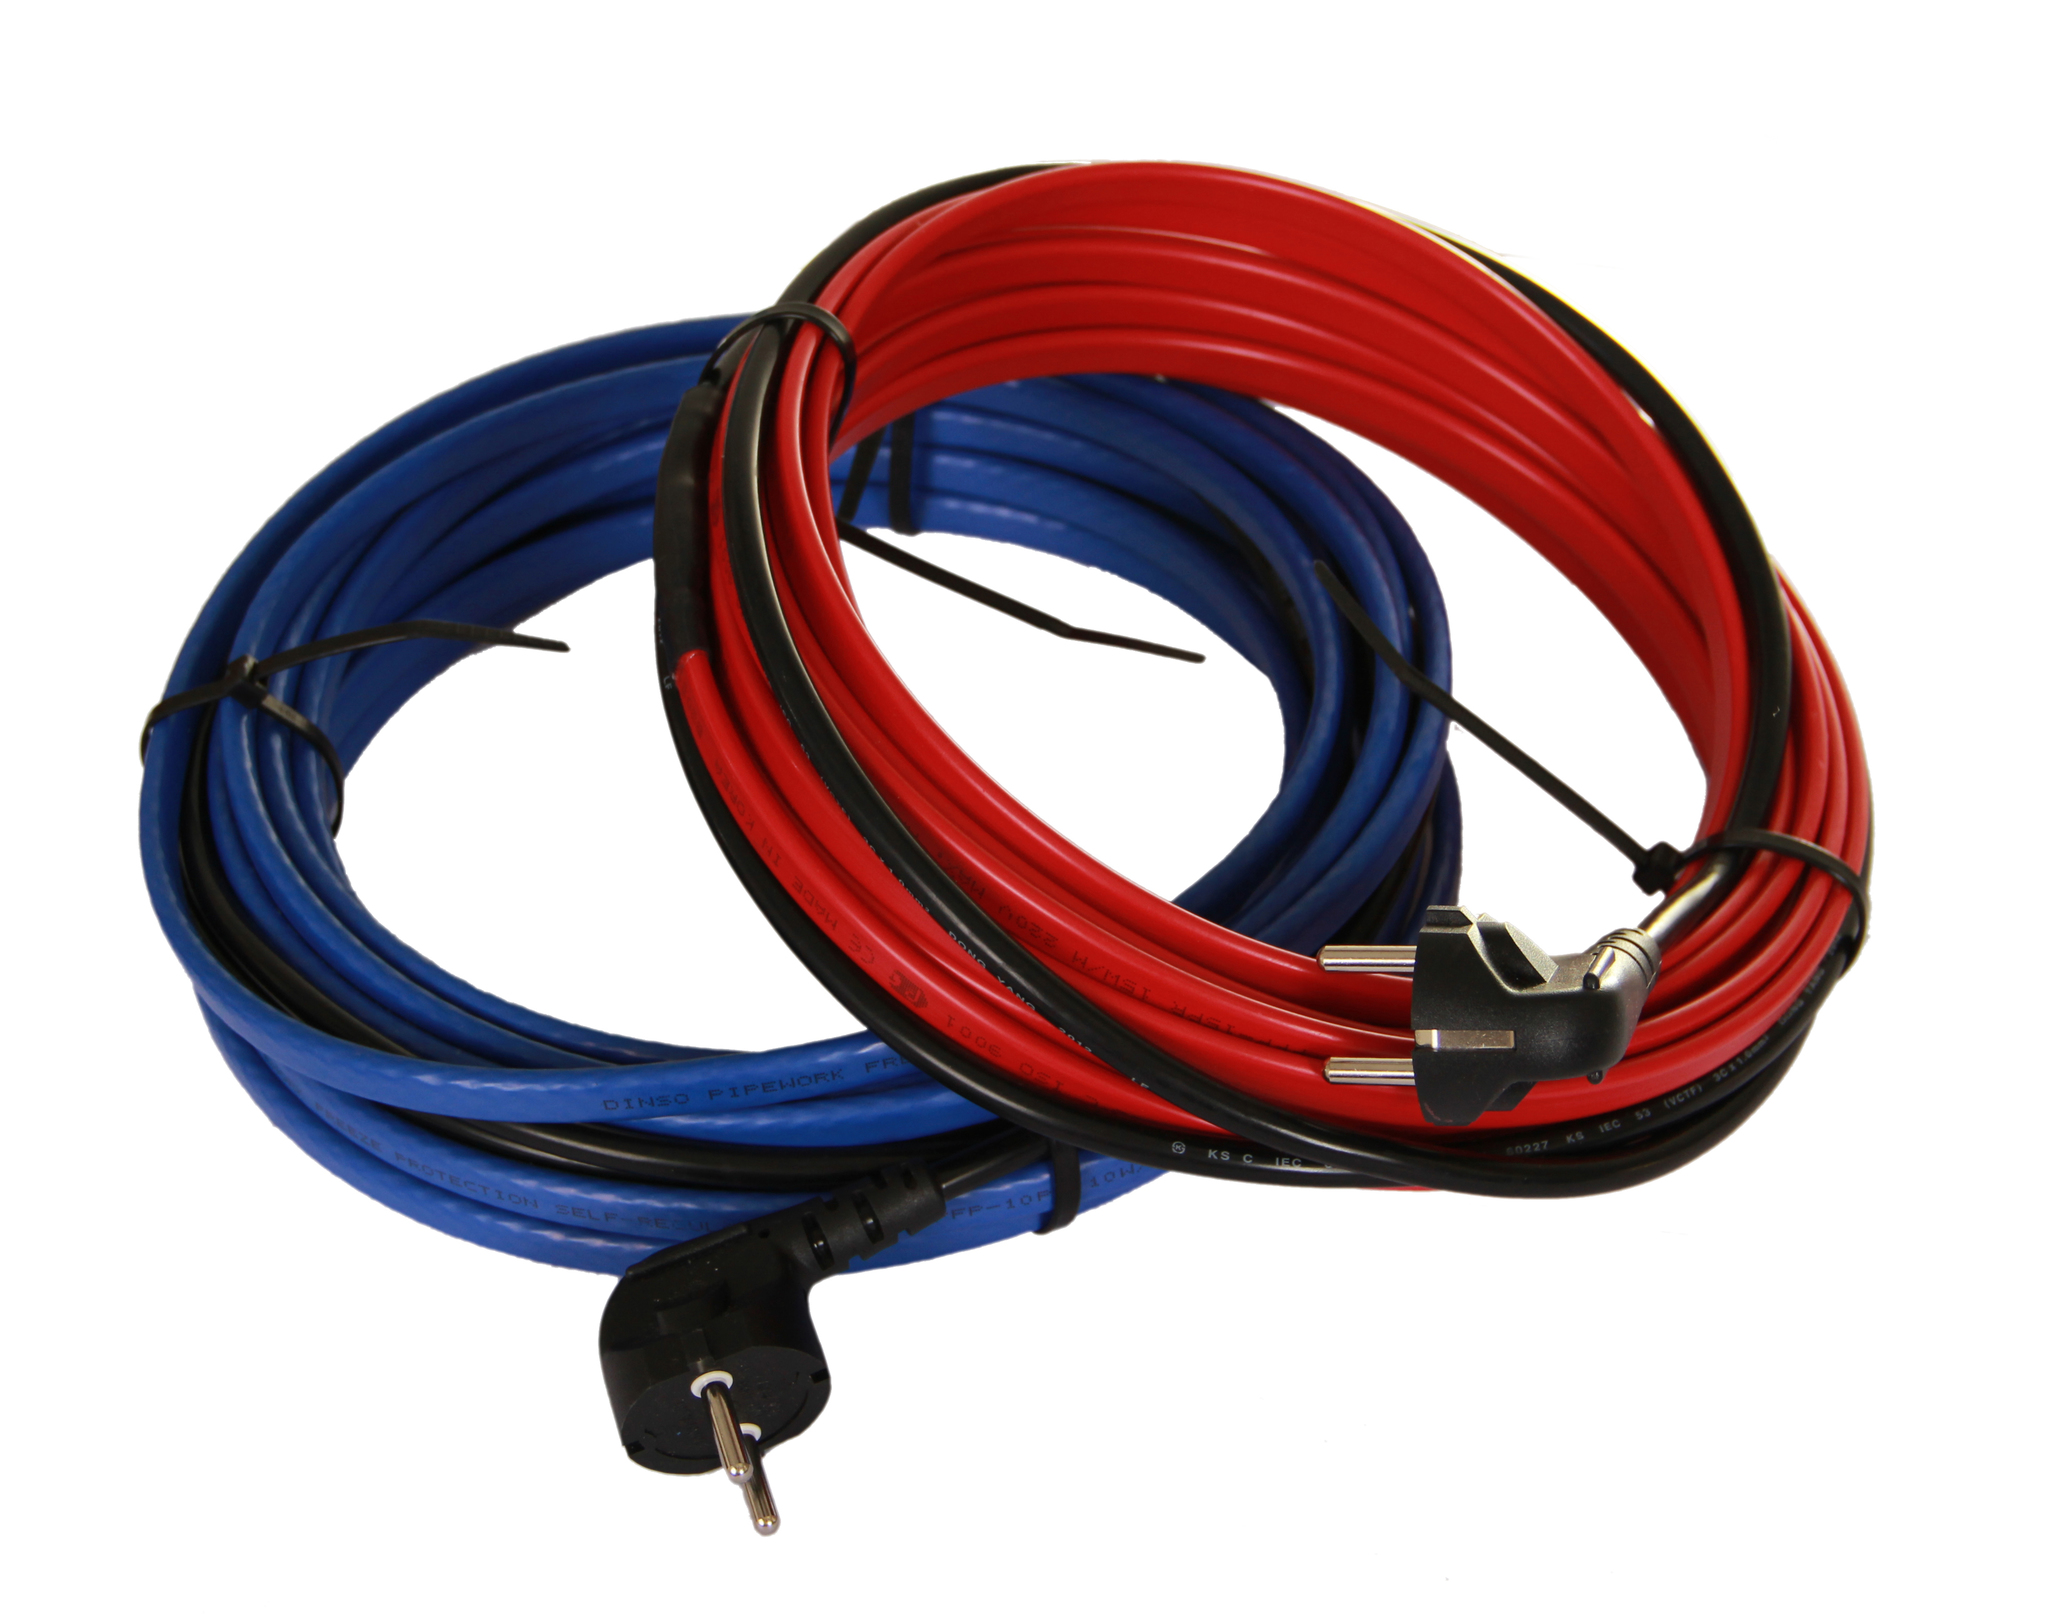 Купить кабель для обогрева труб. Кабель нагревательный для труб 23смбэ2-4. Греющий кабель Traceco (15вт/м ) Blue/Red. Греющий кабель 10вт/м. Греющий кабель hot-Cable SHR-20 360вт.